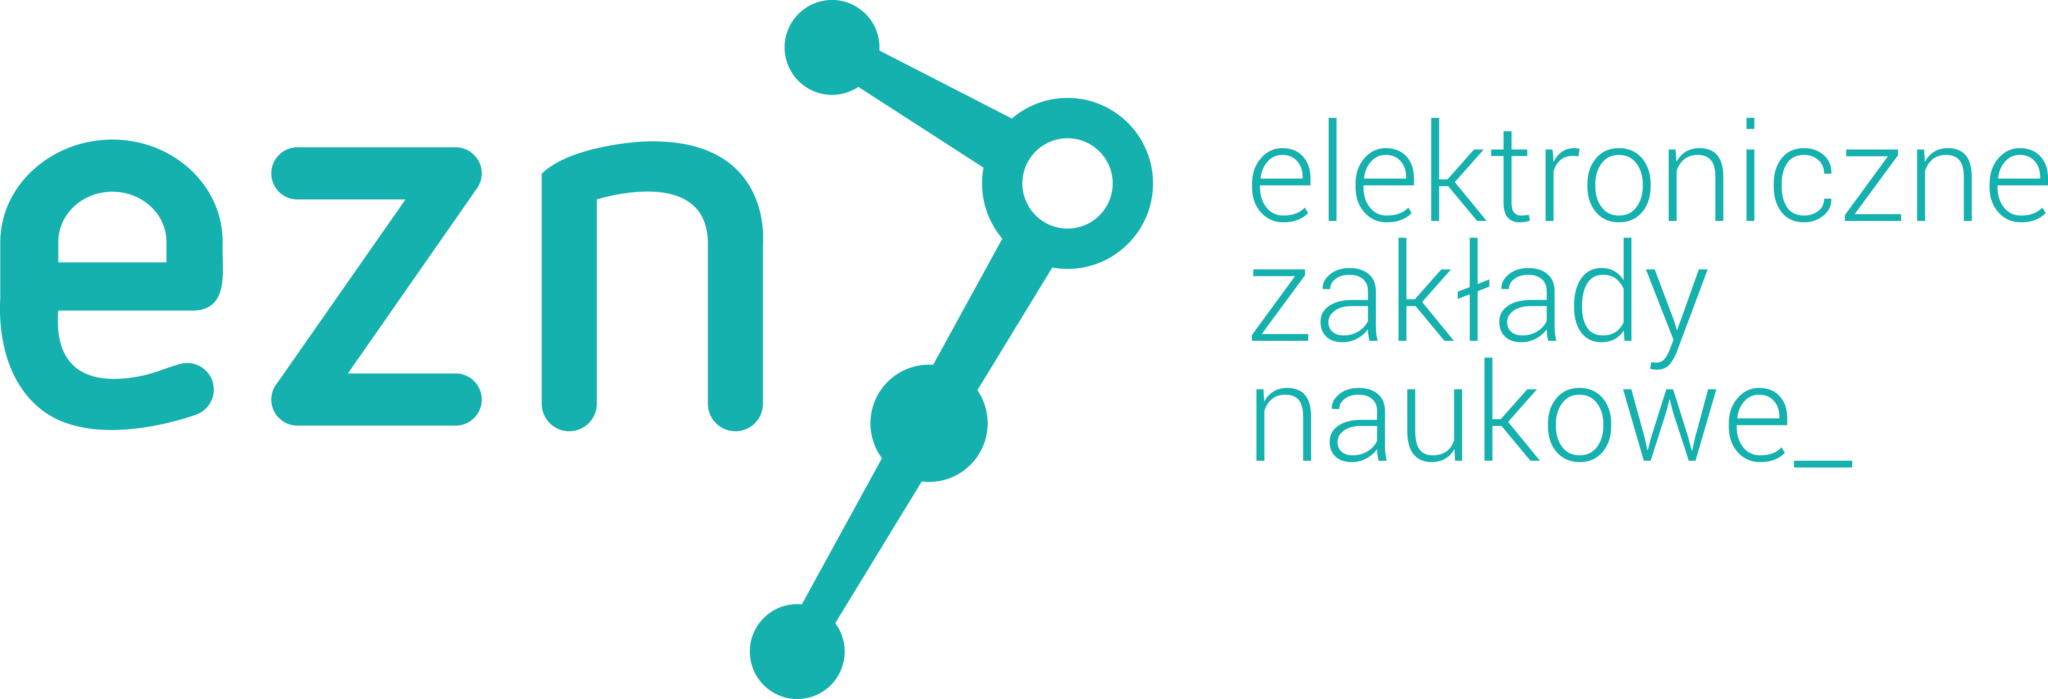 Jubileusz EZN - Elektroniczne Zakłady Naukowe - Wrocław